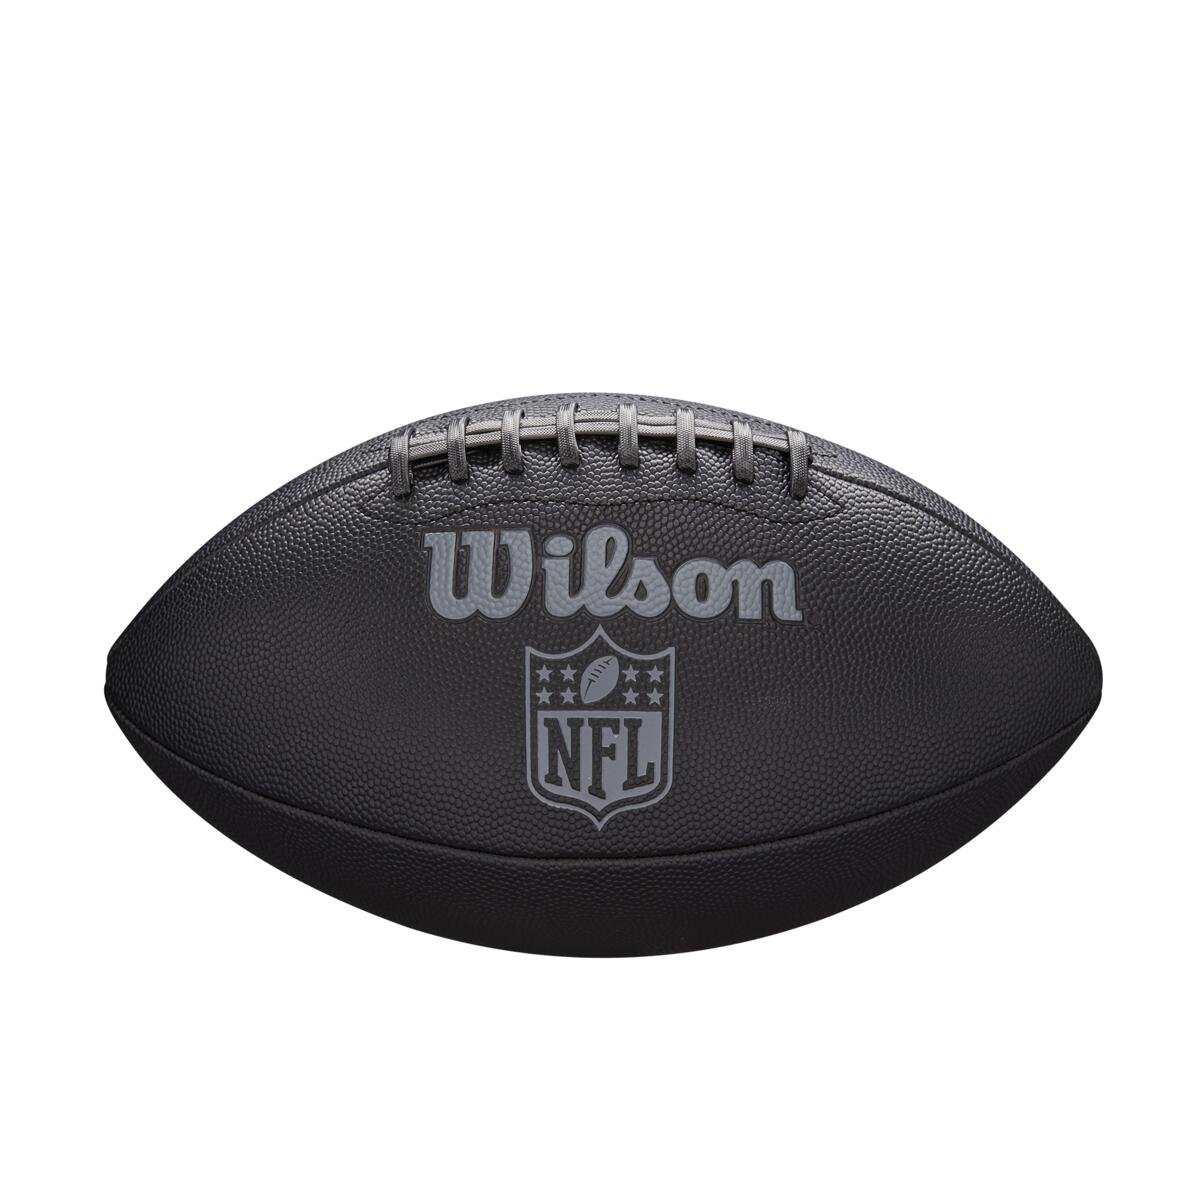 Lopta Wilson NFL Jet Black Sz Fb J - čierna